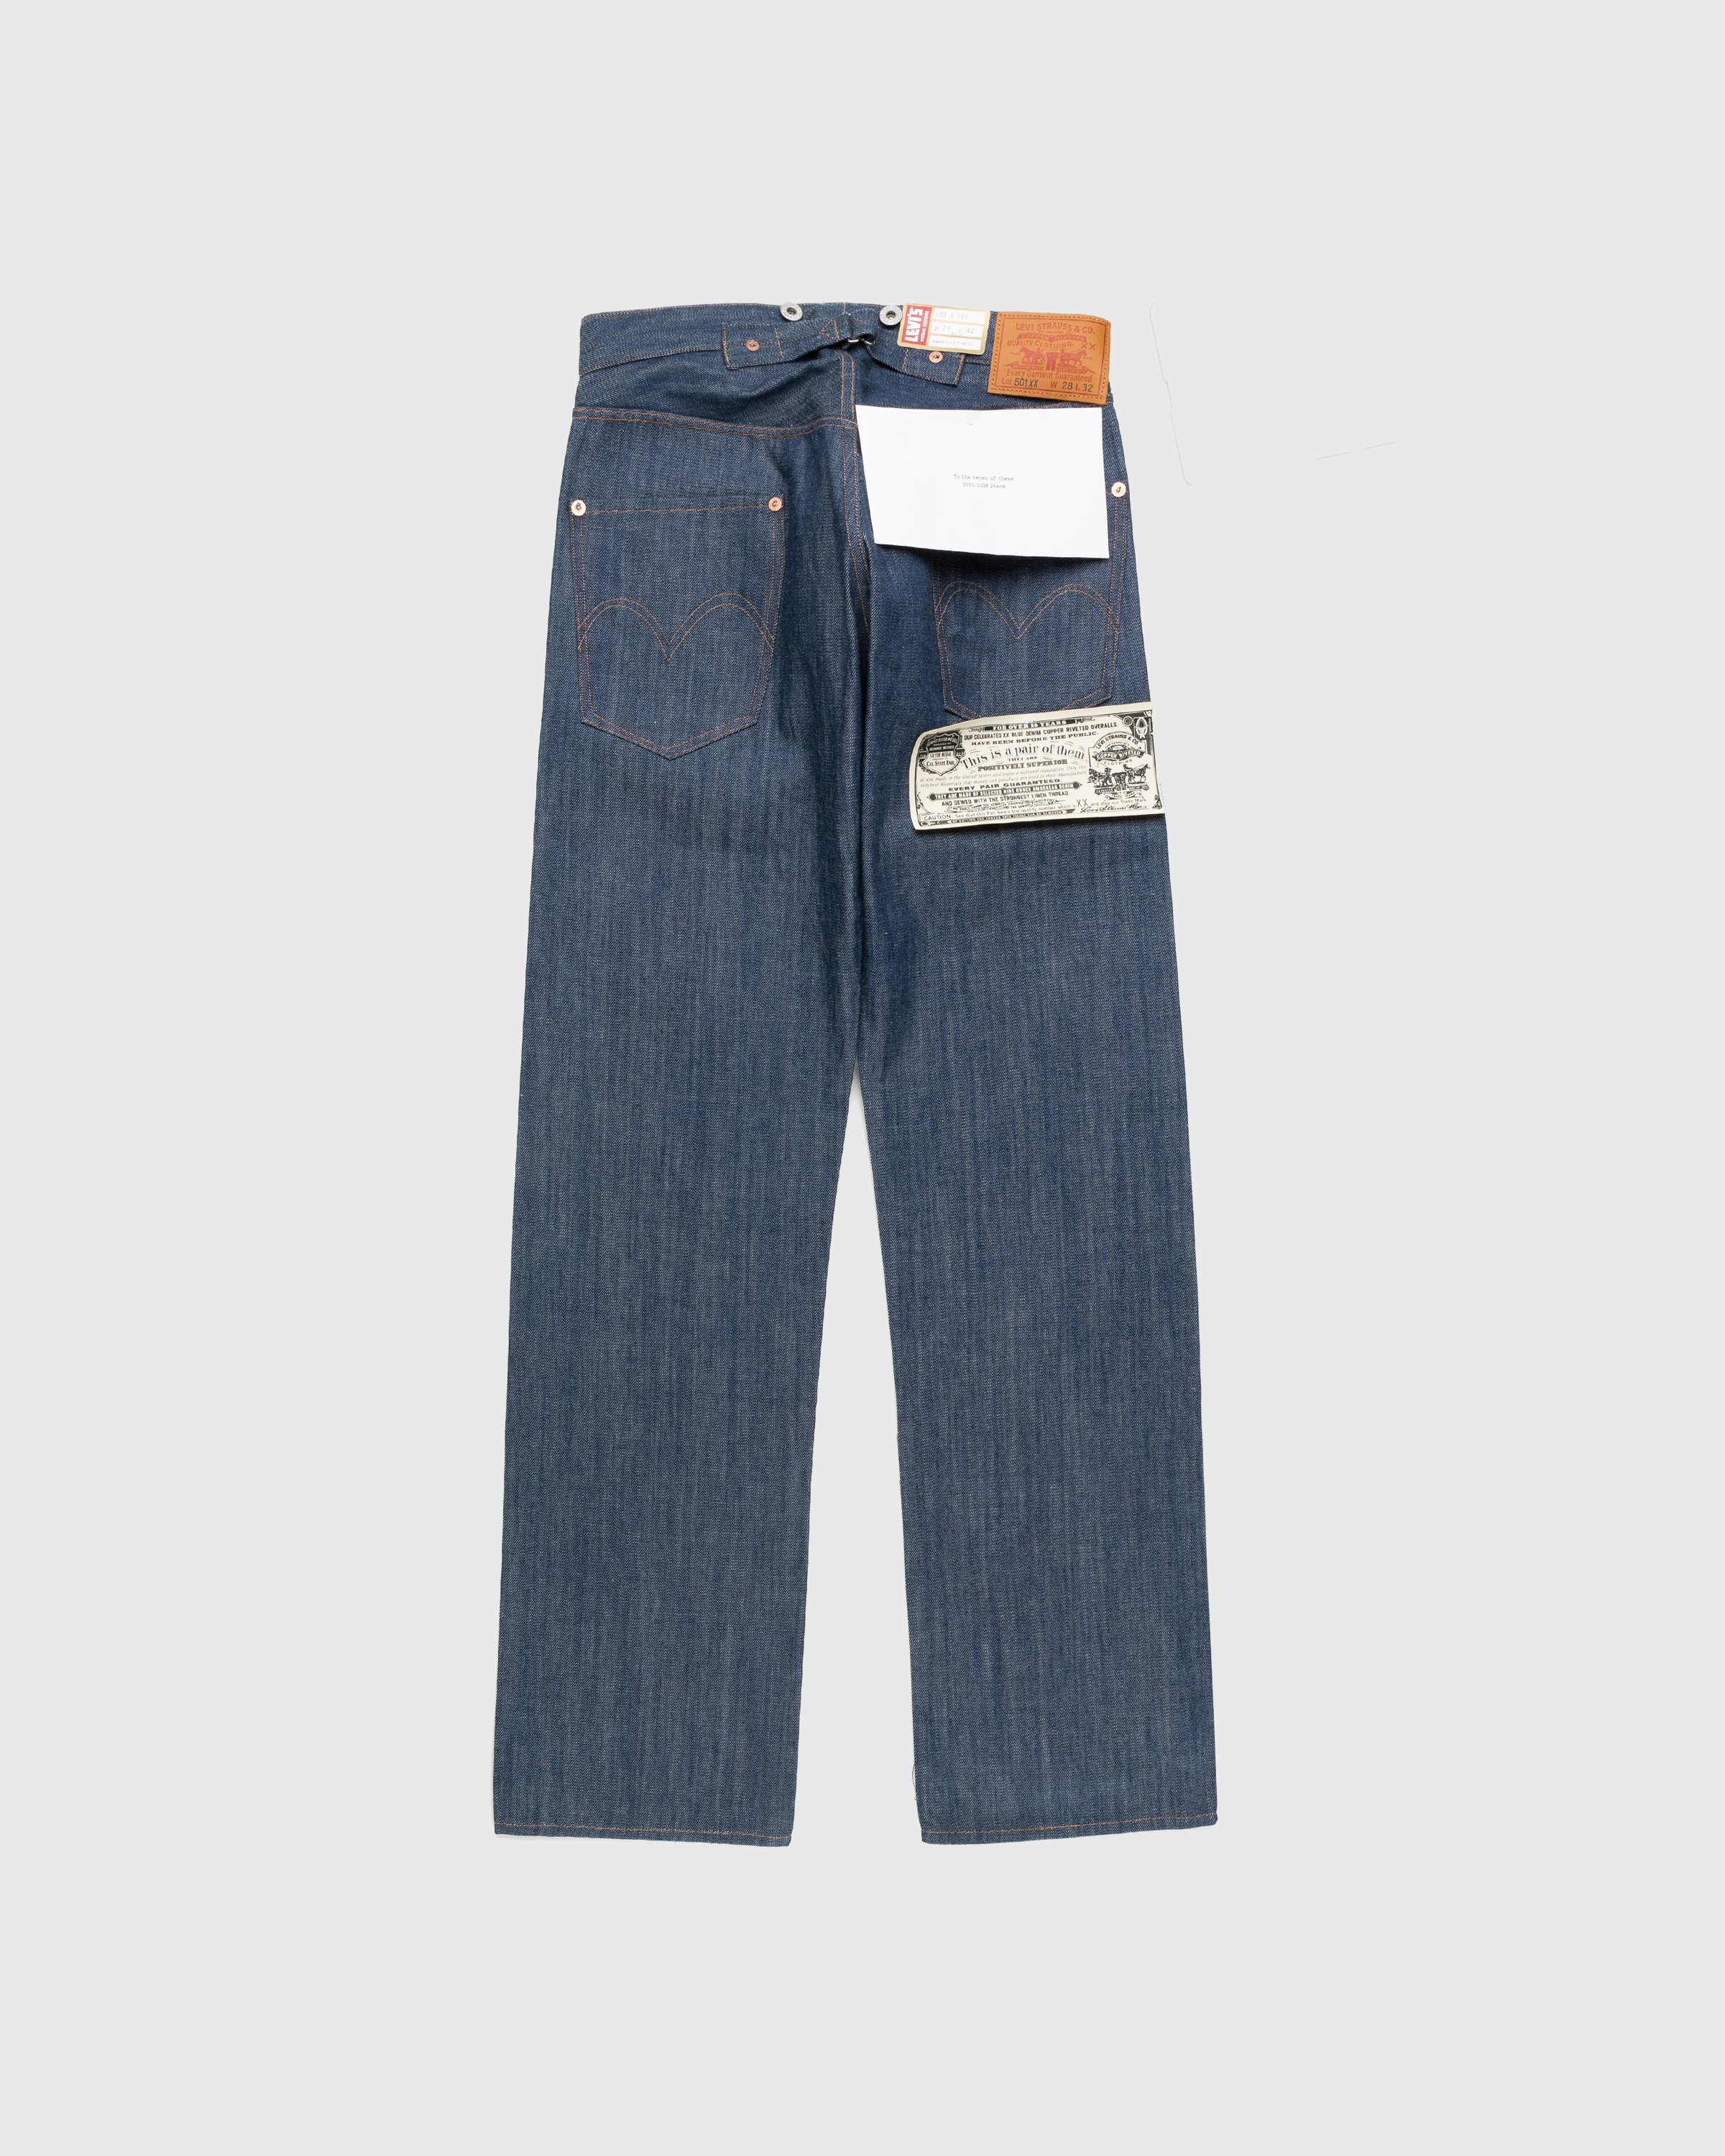 Levi's - 1901 501 Jeans Dark Indigo Flat Finish - Clothing - Blue - Image 2